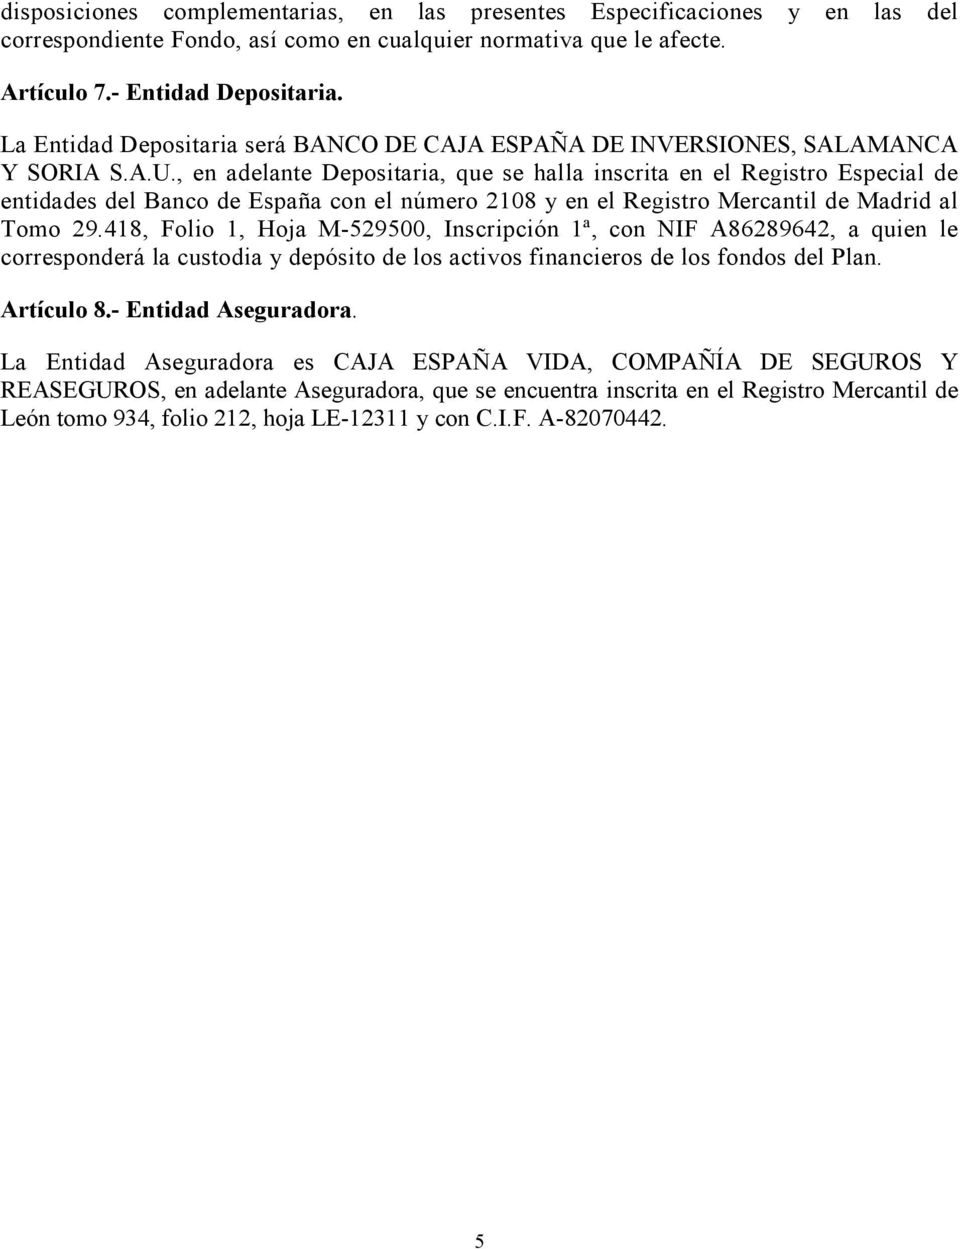 , en adelante Depositaria, que se halla inscrita en el Registro Especial de entidades del Banco de España con el número 2108 y en el Registro Mercantil de Madrid al Tomo 29.